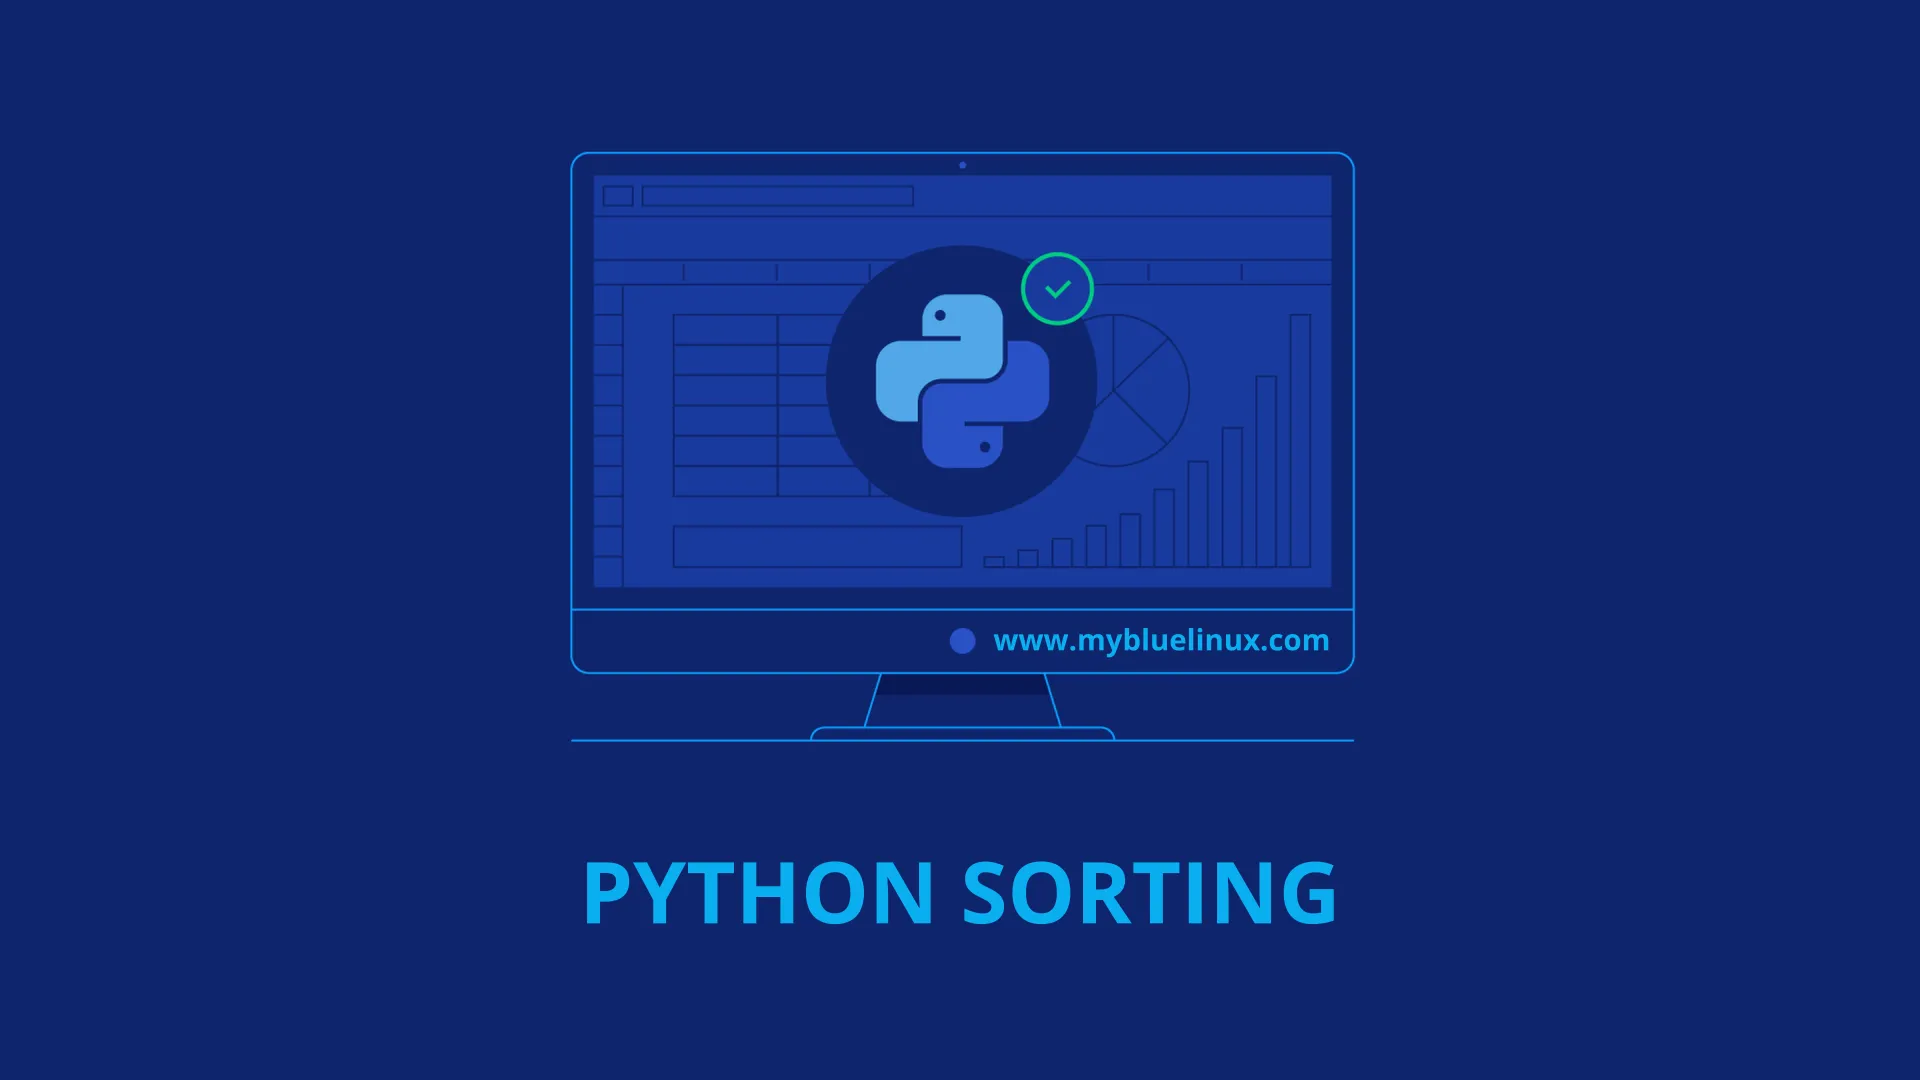 Python Sorting